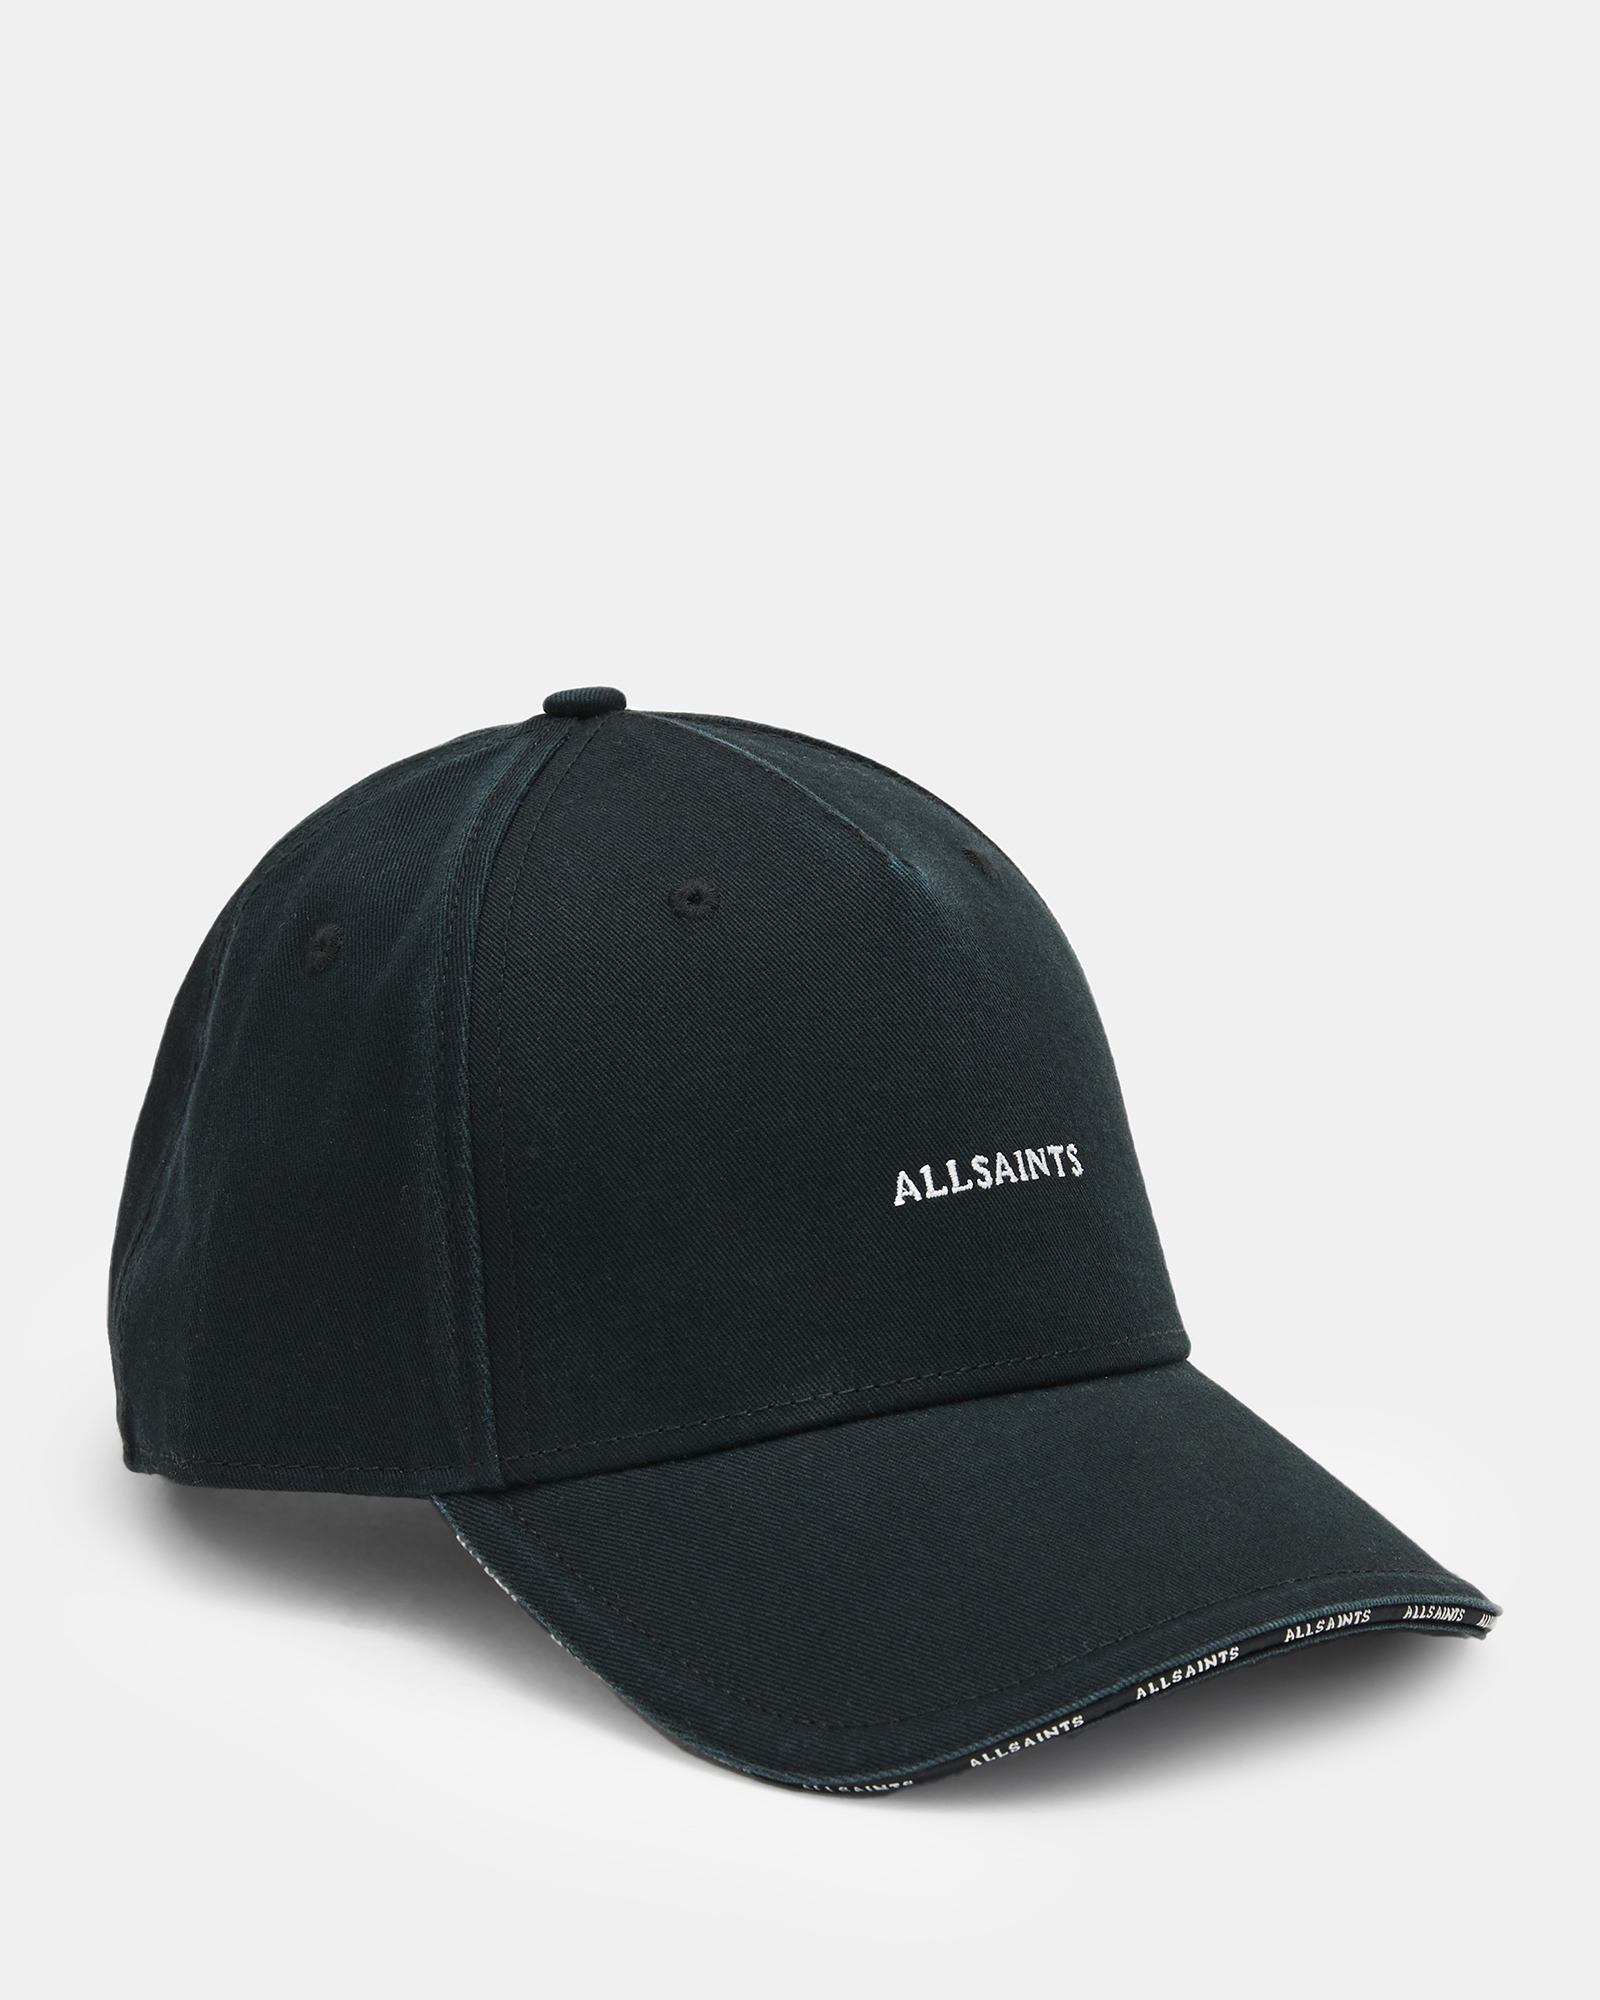 AllSaints Felix Baseball Cap,, Black